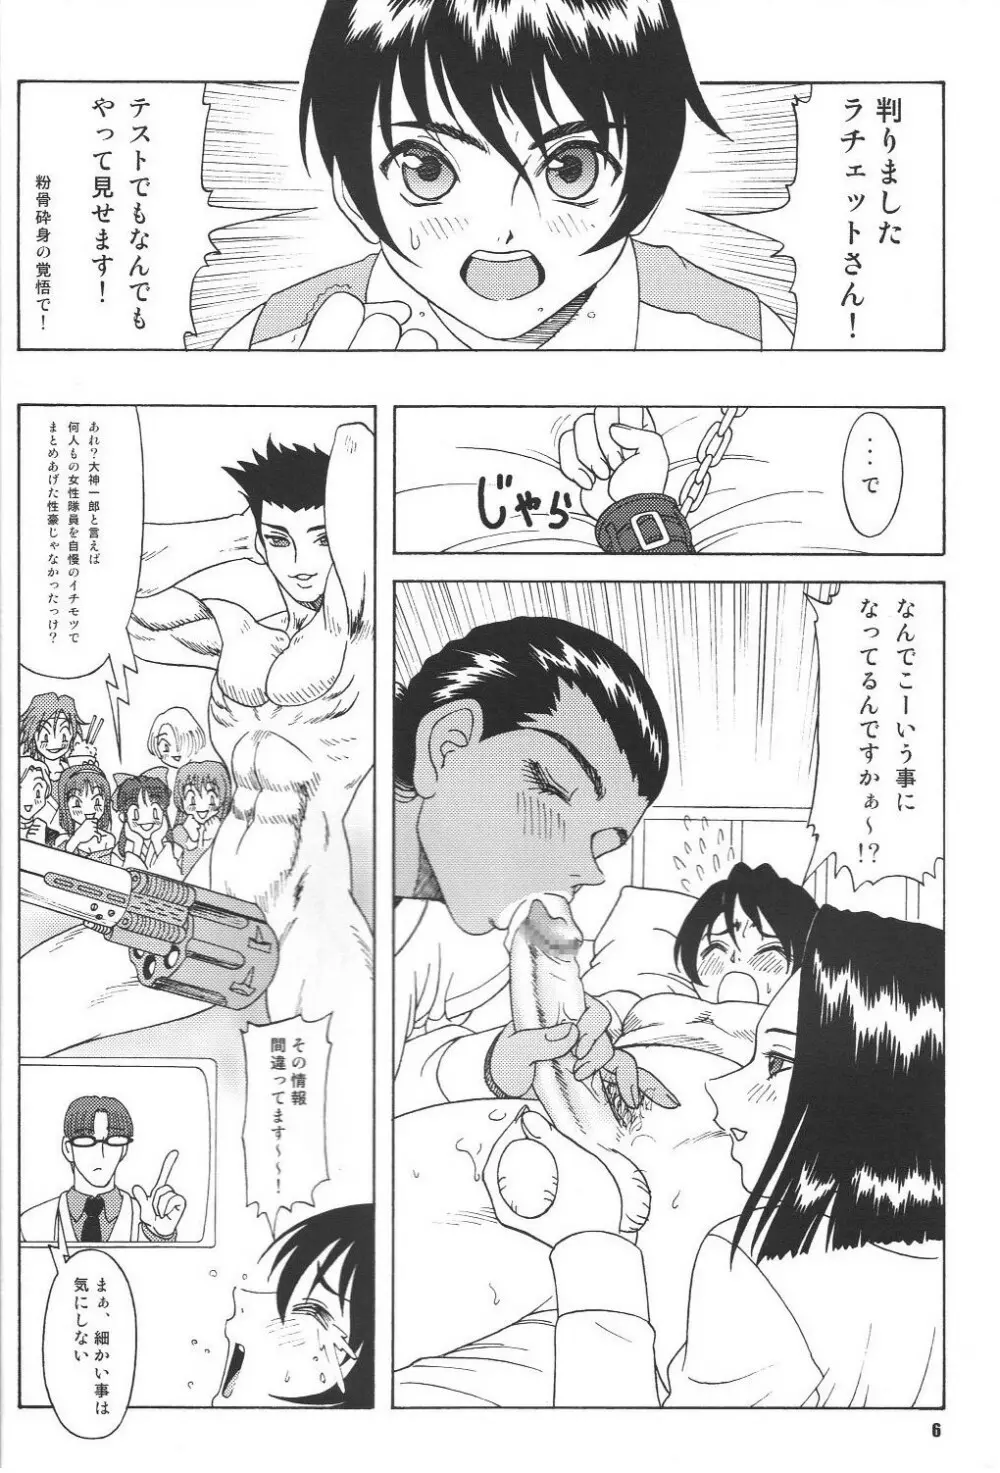 Fujishima Spirits vol.6 5ページ